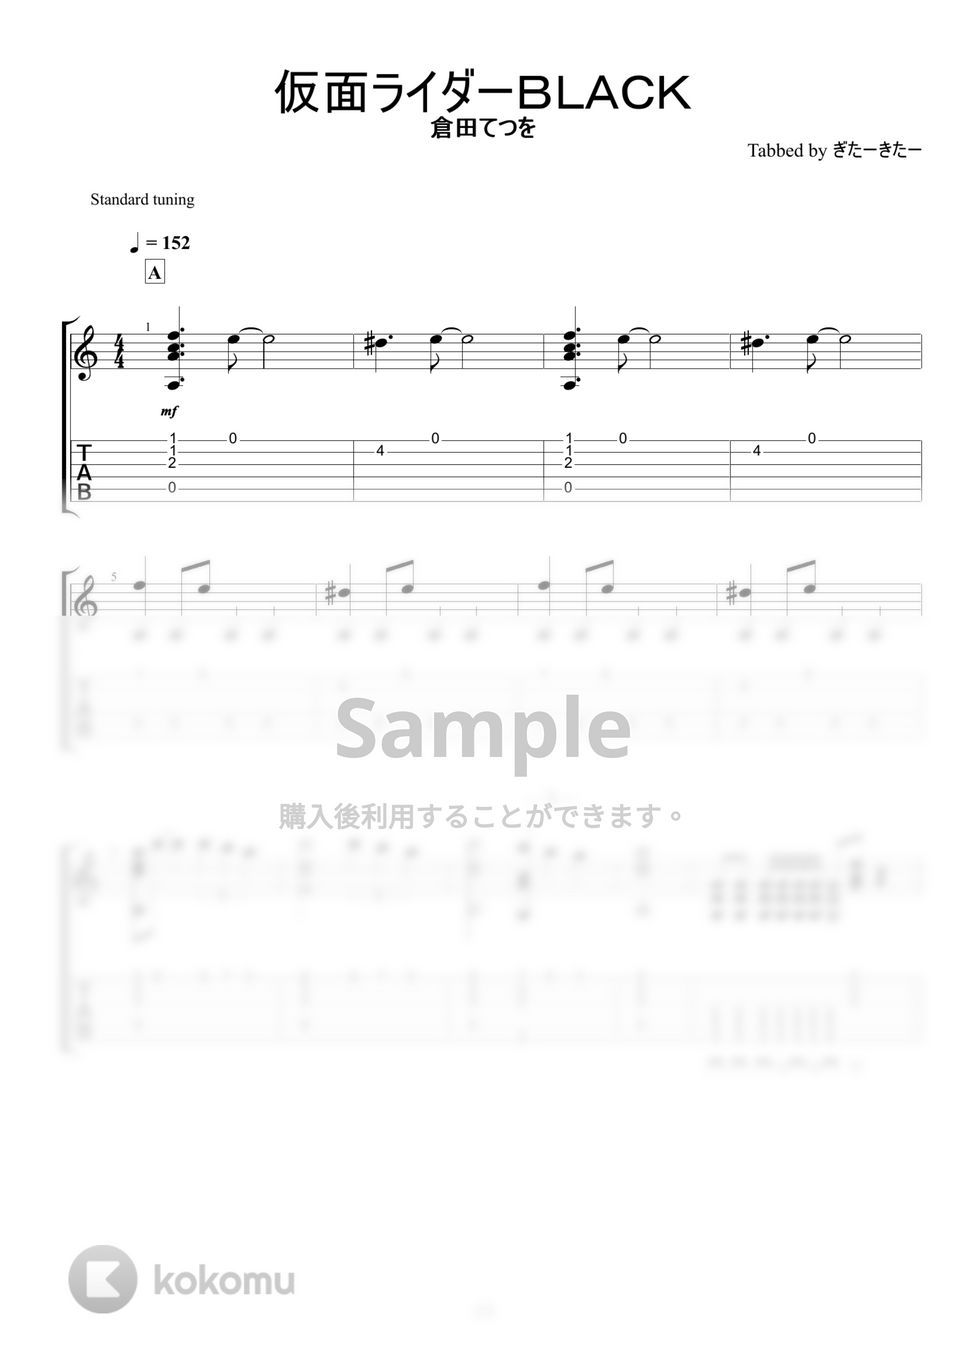 仮面ライダーブラック - 仮面ライダーBLACK (ソロギターアレンジ) by ぎたーきたー